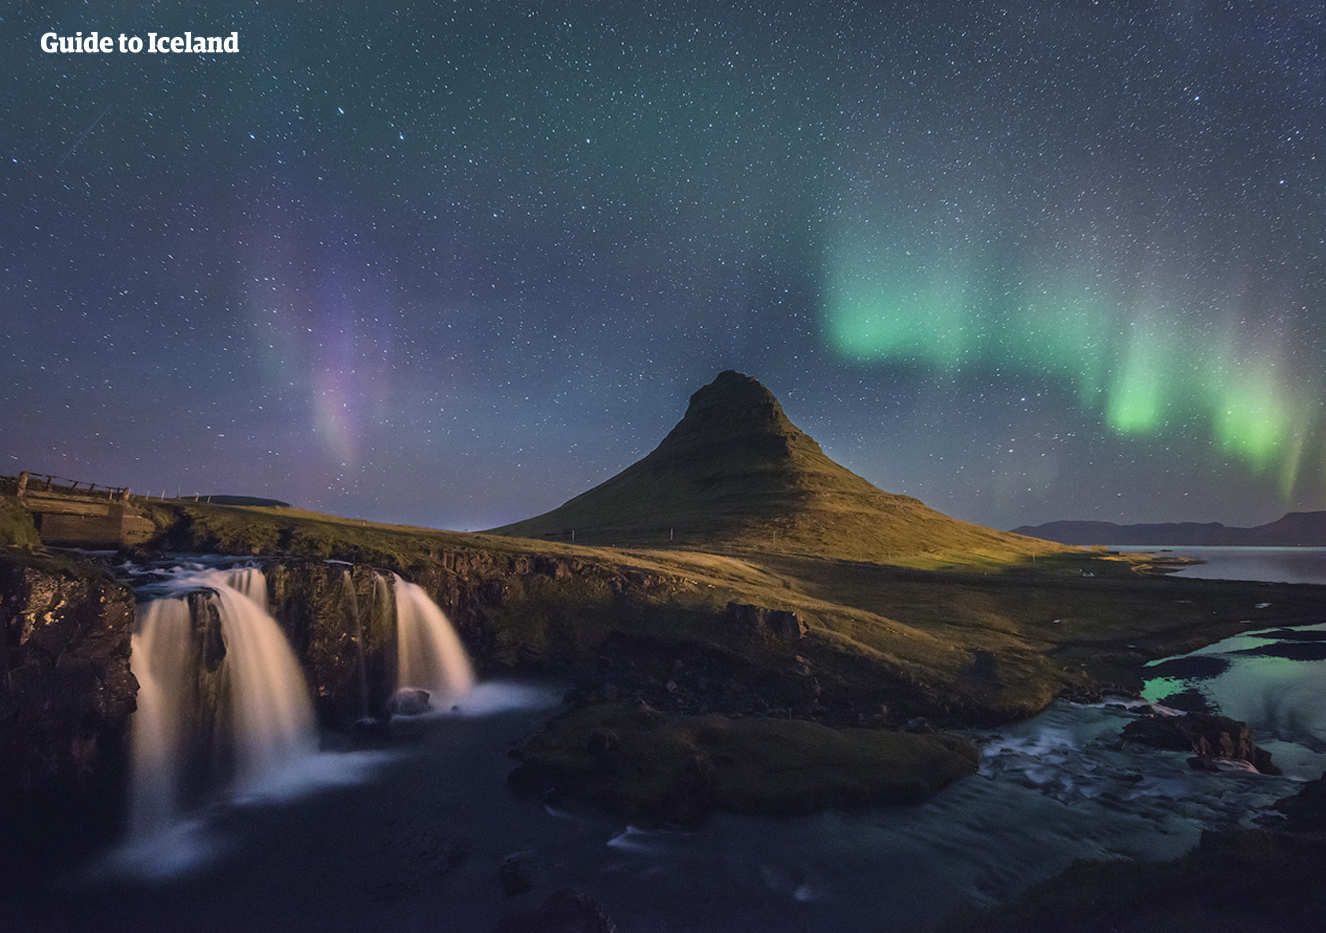 Der Berg Kirkjufell steht stolz unter den atemberaubenden Polarlichtern.